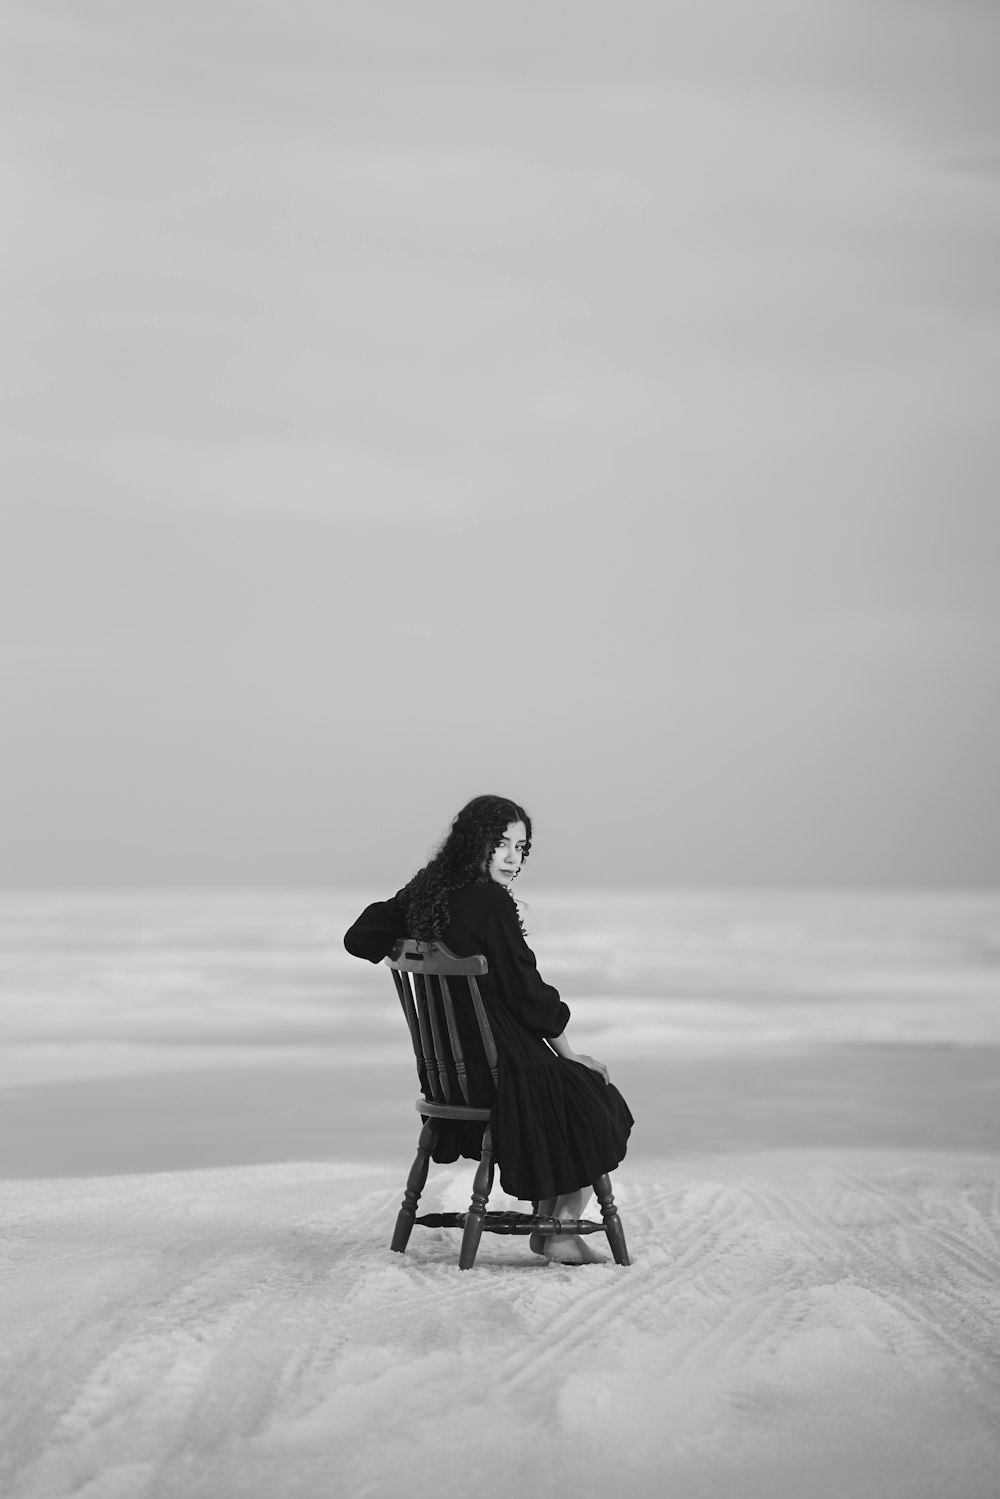 uma pessoa sentada em uma cadeira na neve